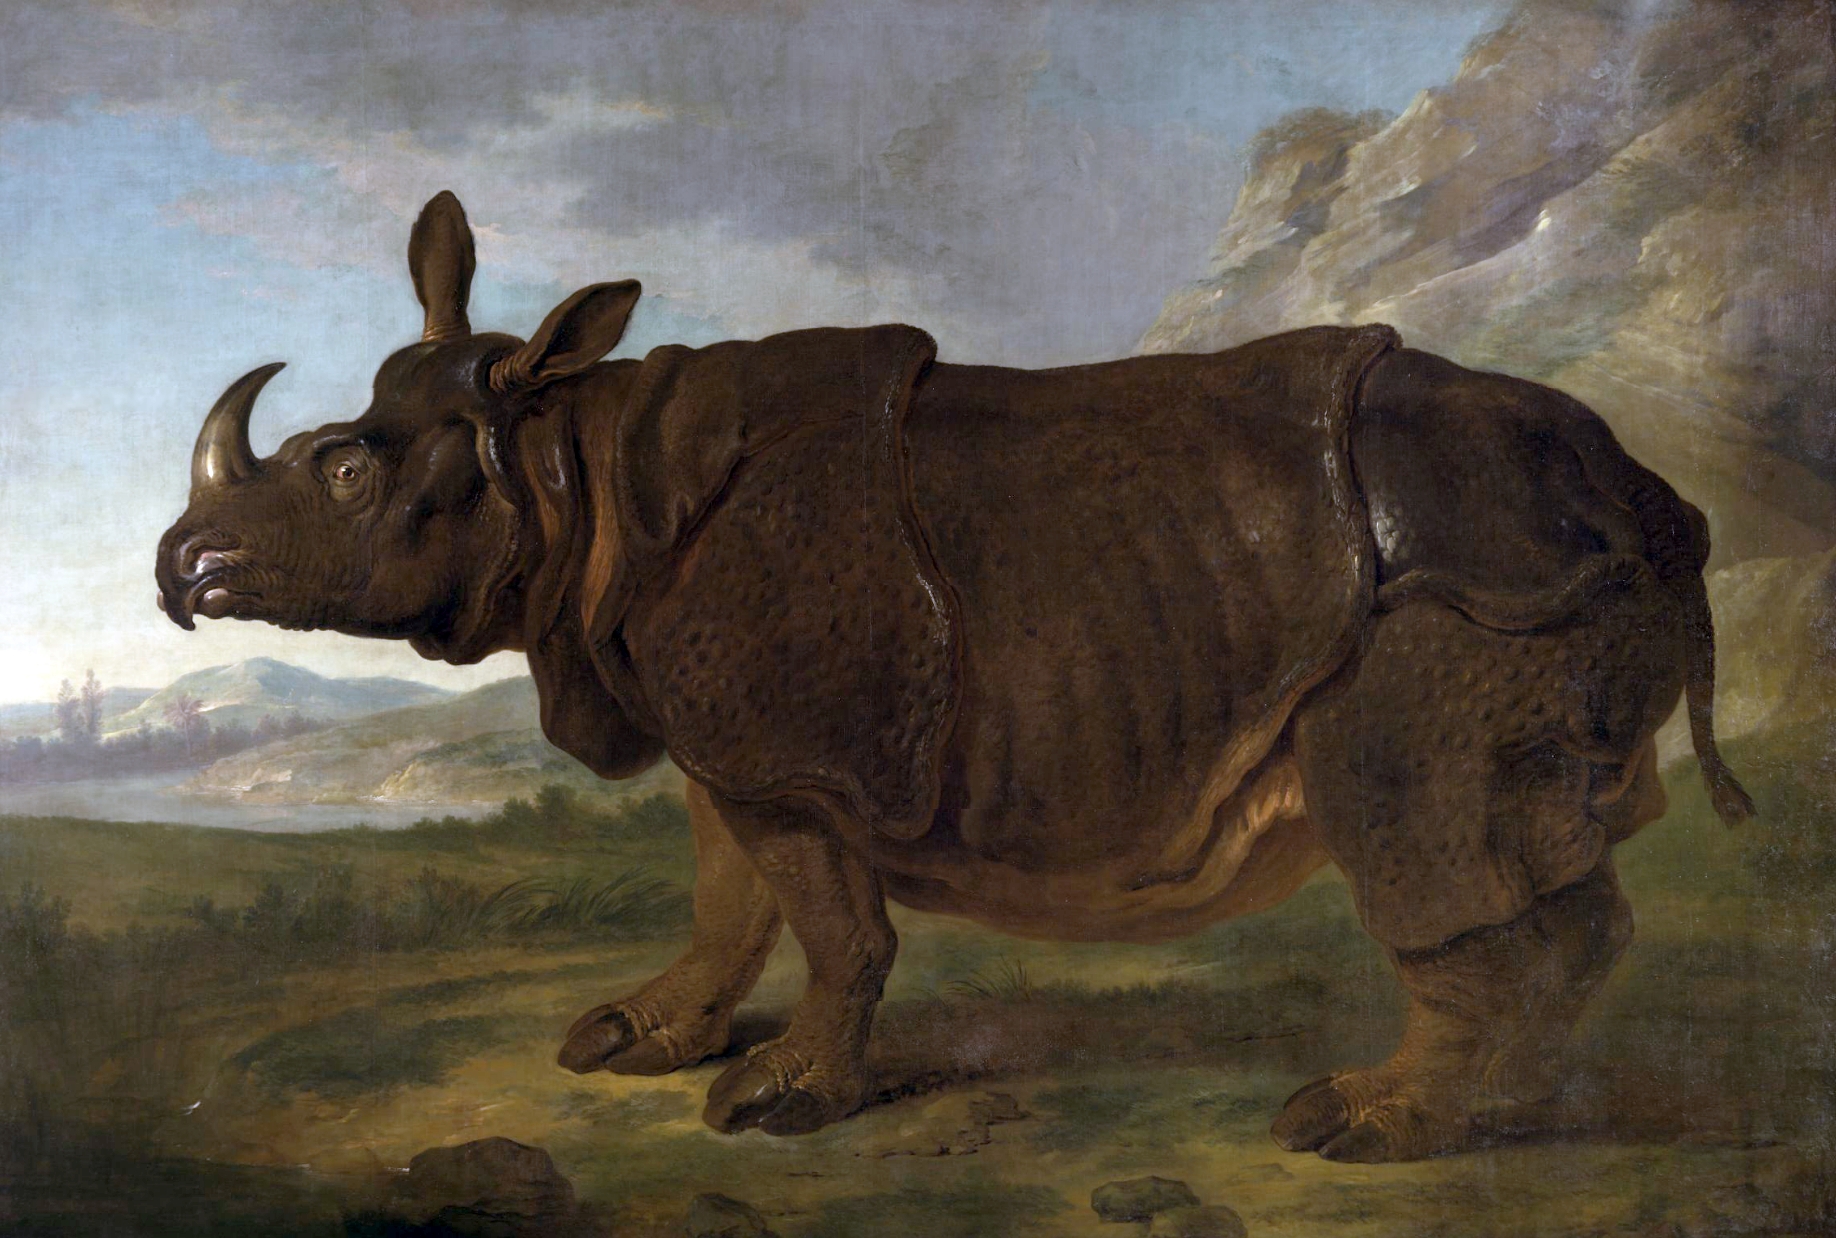 Le rhinocéros de Dürer